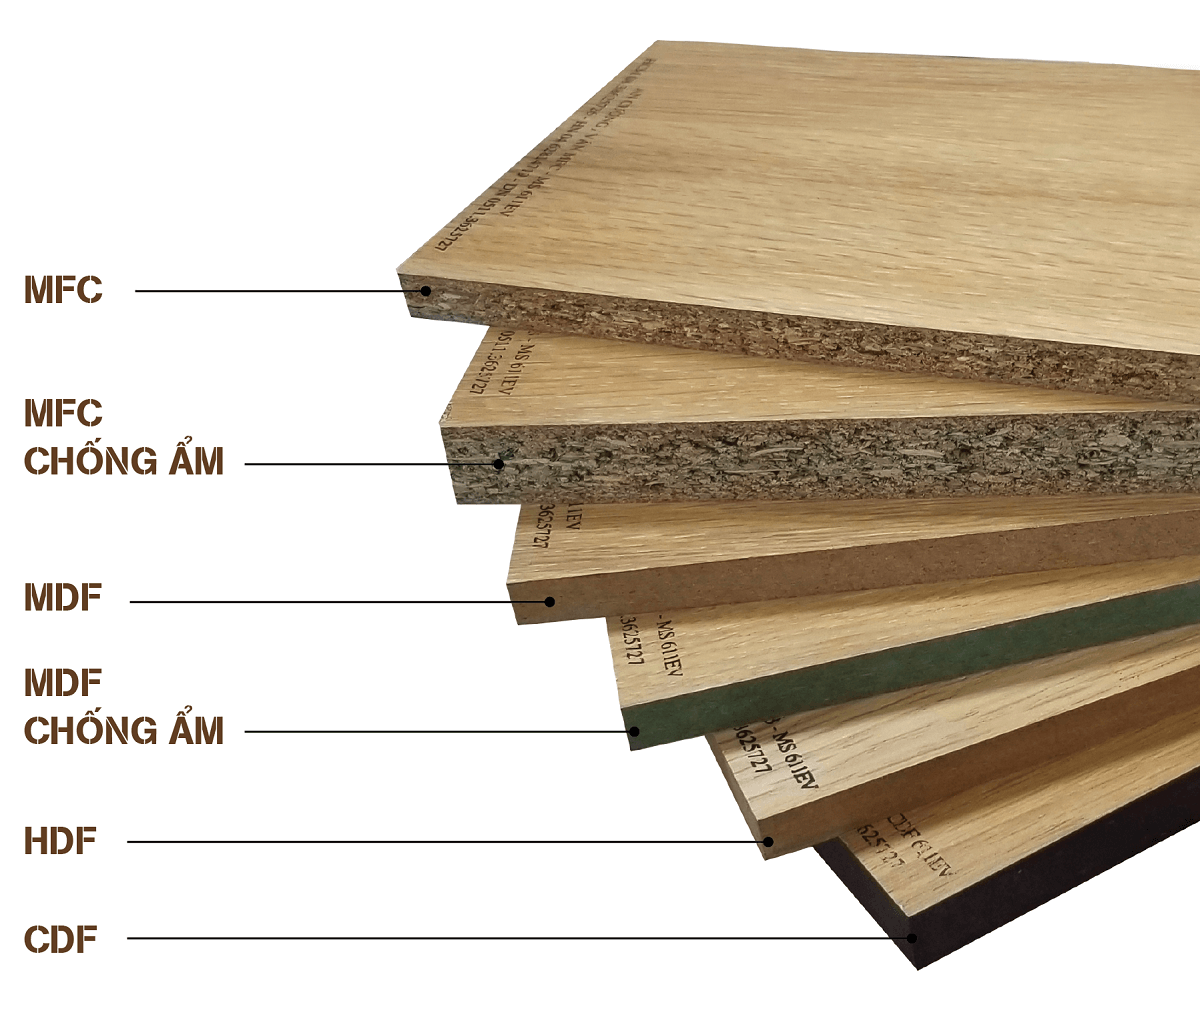 Cửa gỗ công nghiệp ở SHOWROOM KINGDOOR cung cấp đảm bảo chất lượng